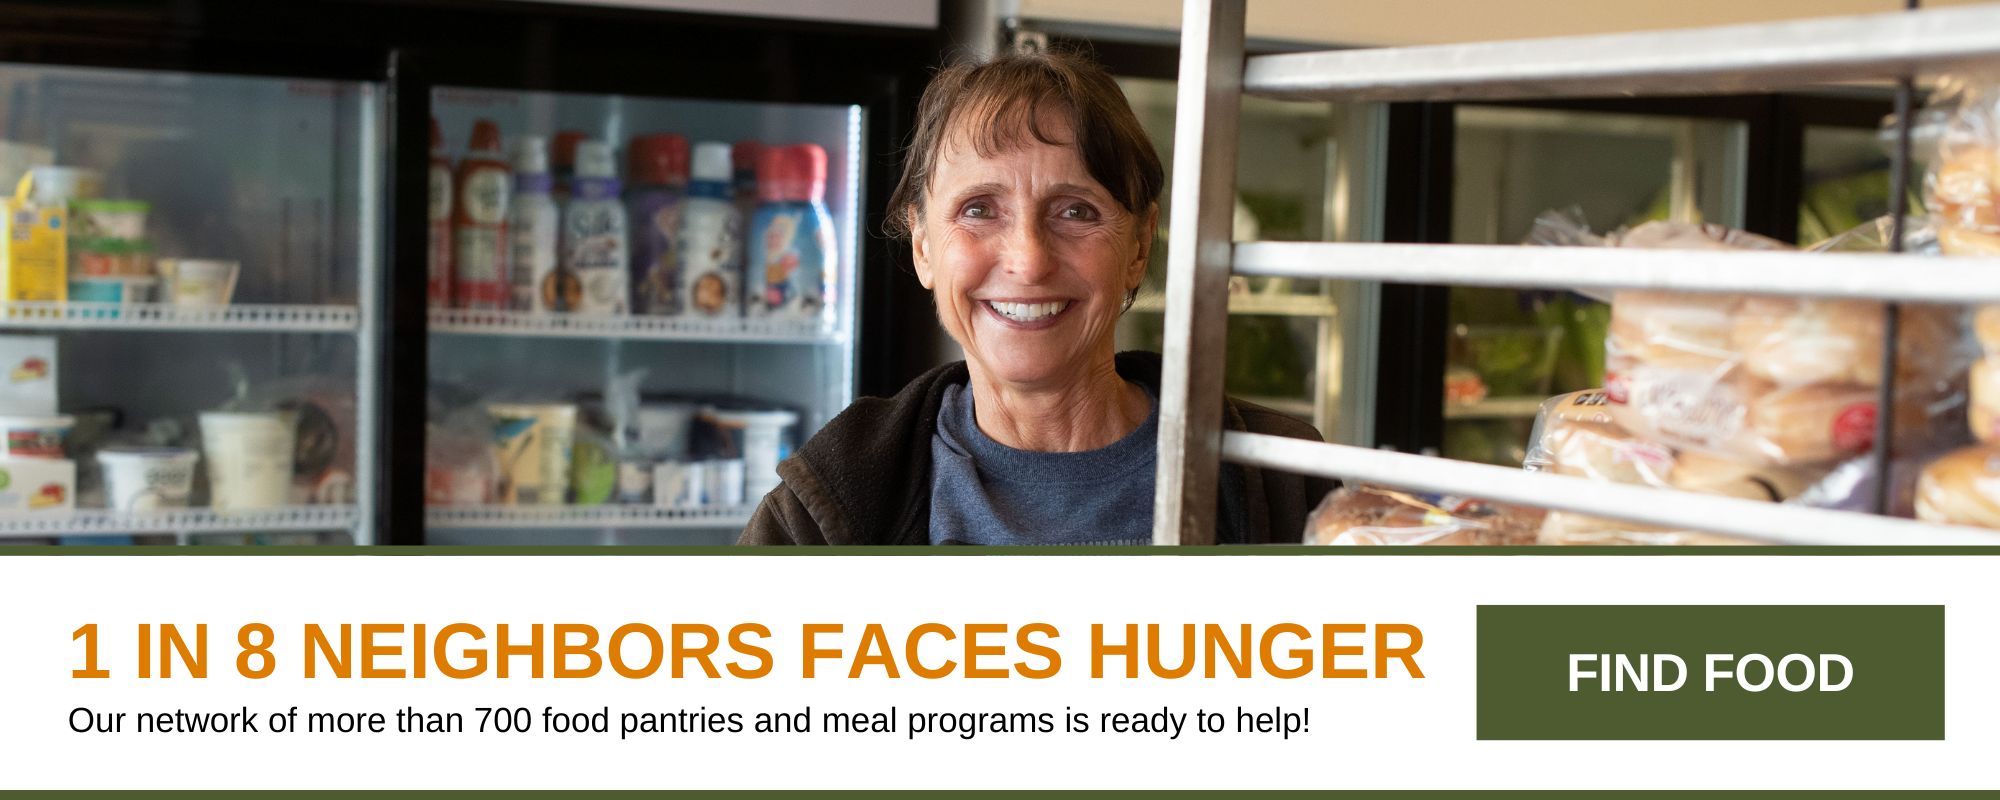 1 em cada 8 vizinhos enfrenta fome. Nossa rede de mais de 700 despensas de alimentos e programas de refeições está pronta para ajudar! Procurar comida